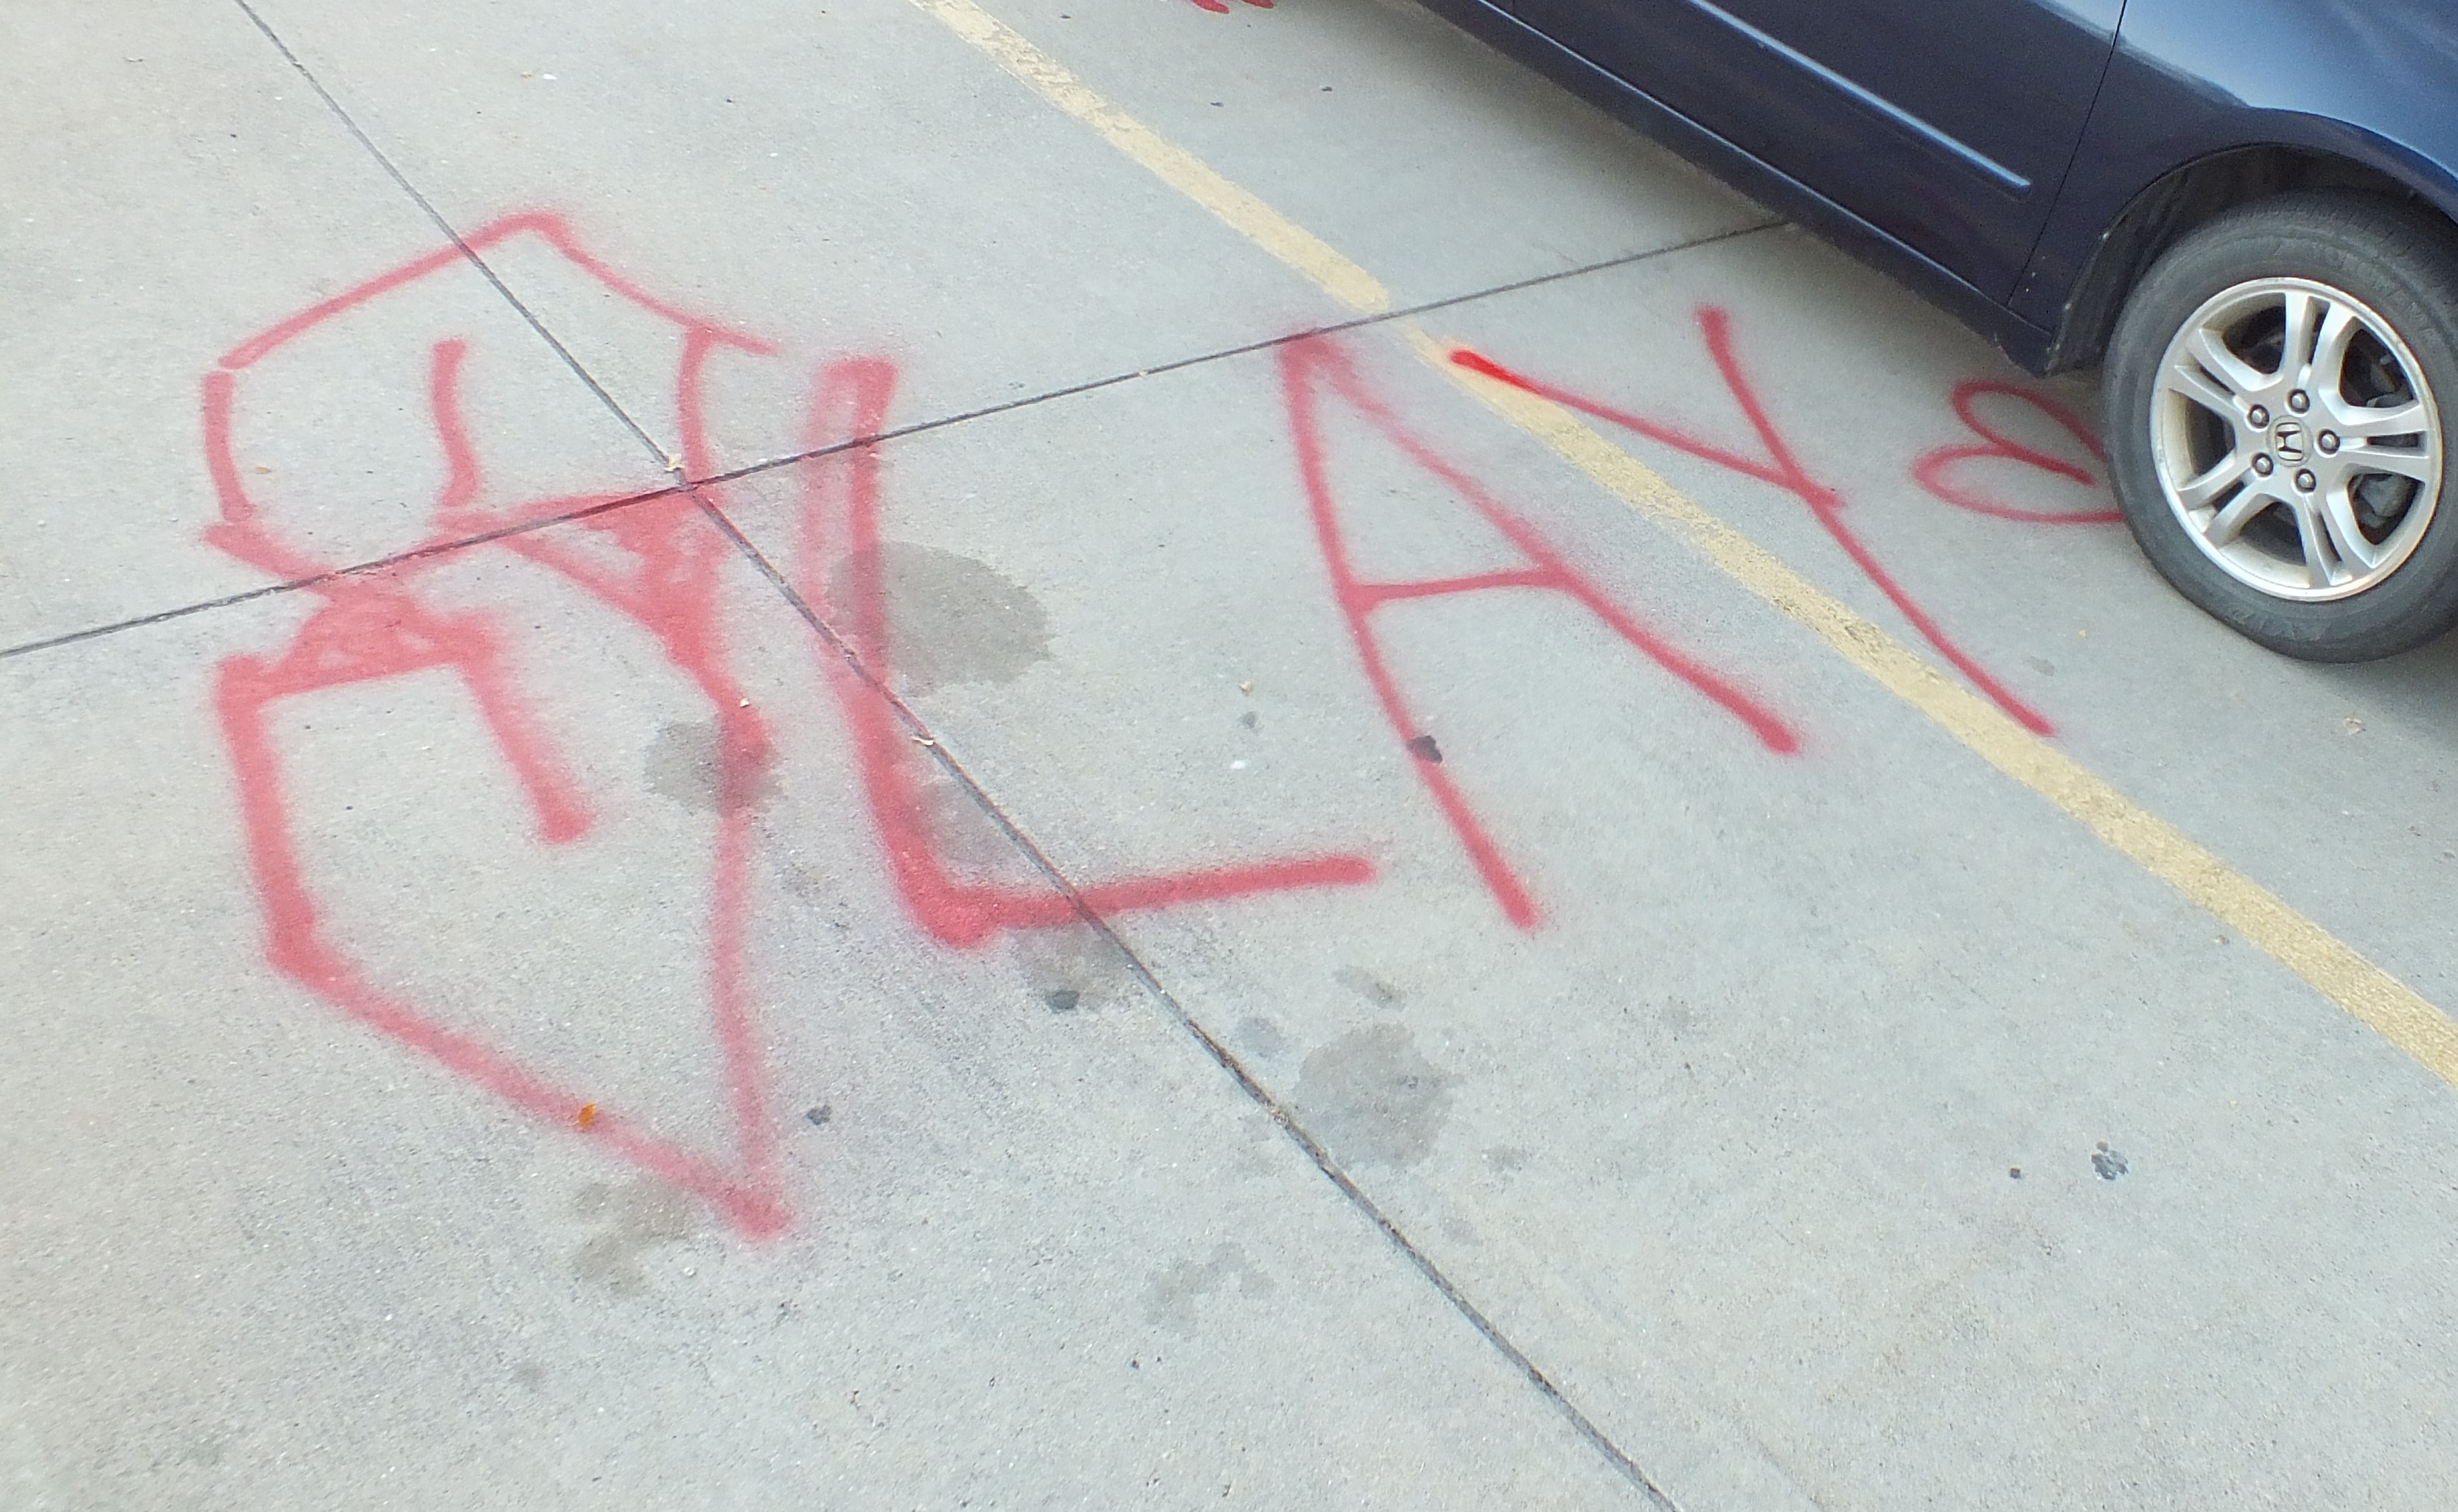 Image 2 : graffiti rouge sur le trottoir qui dit